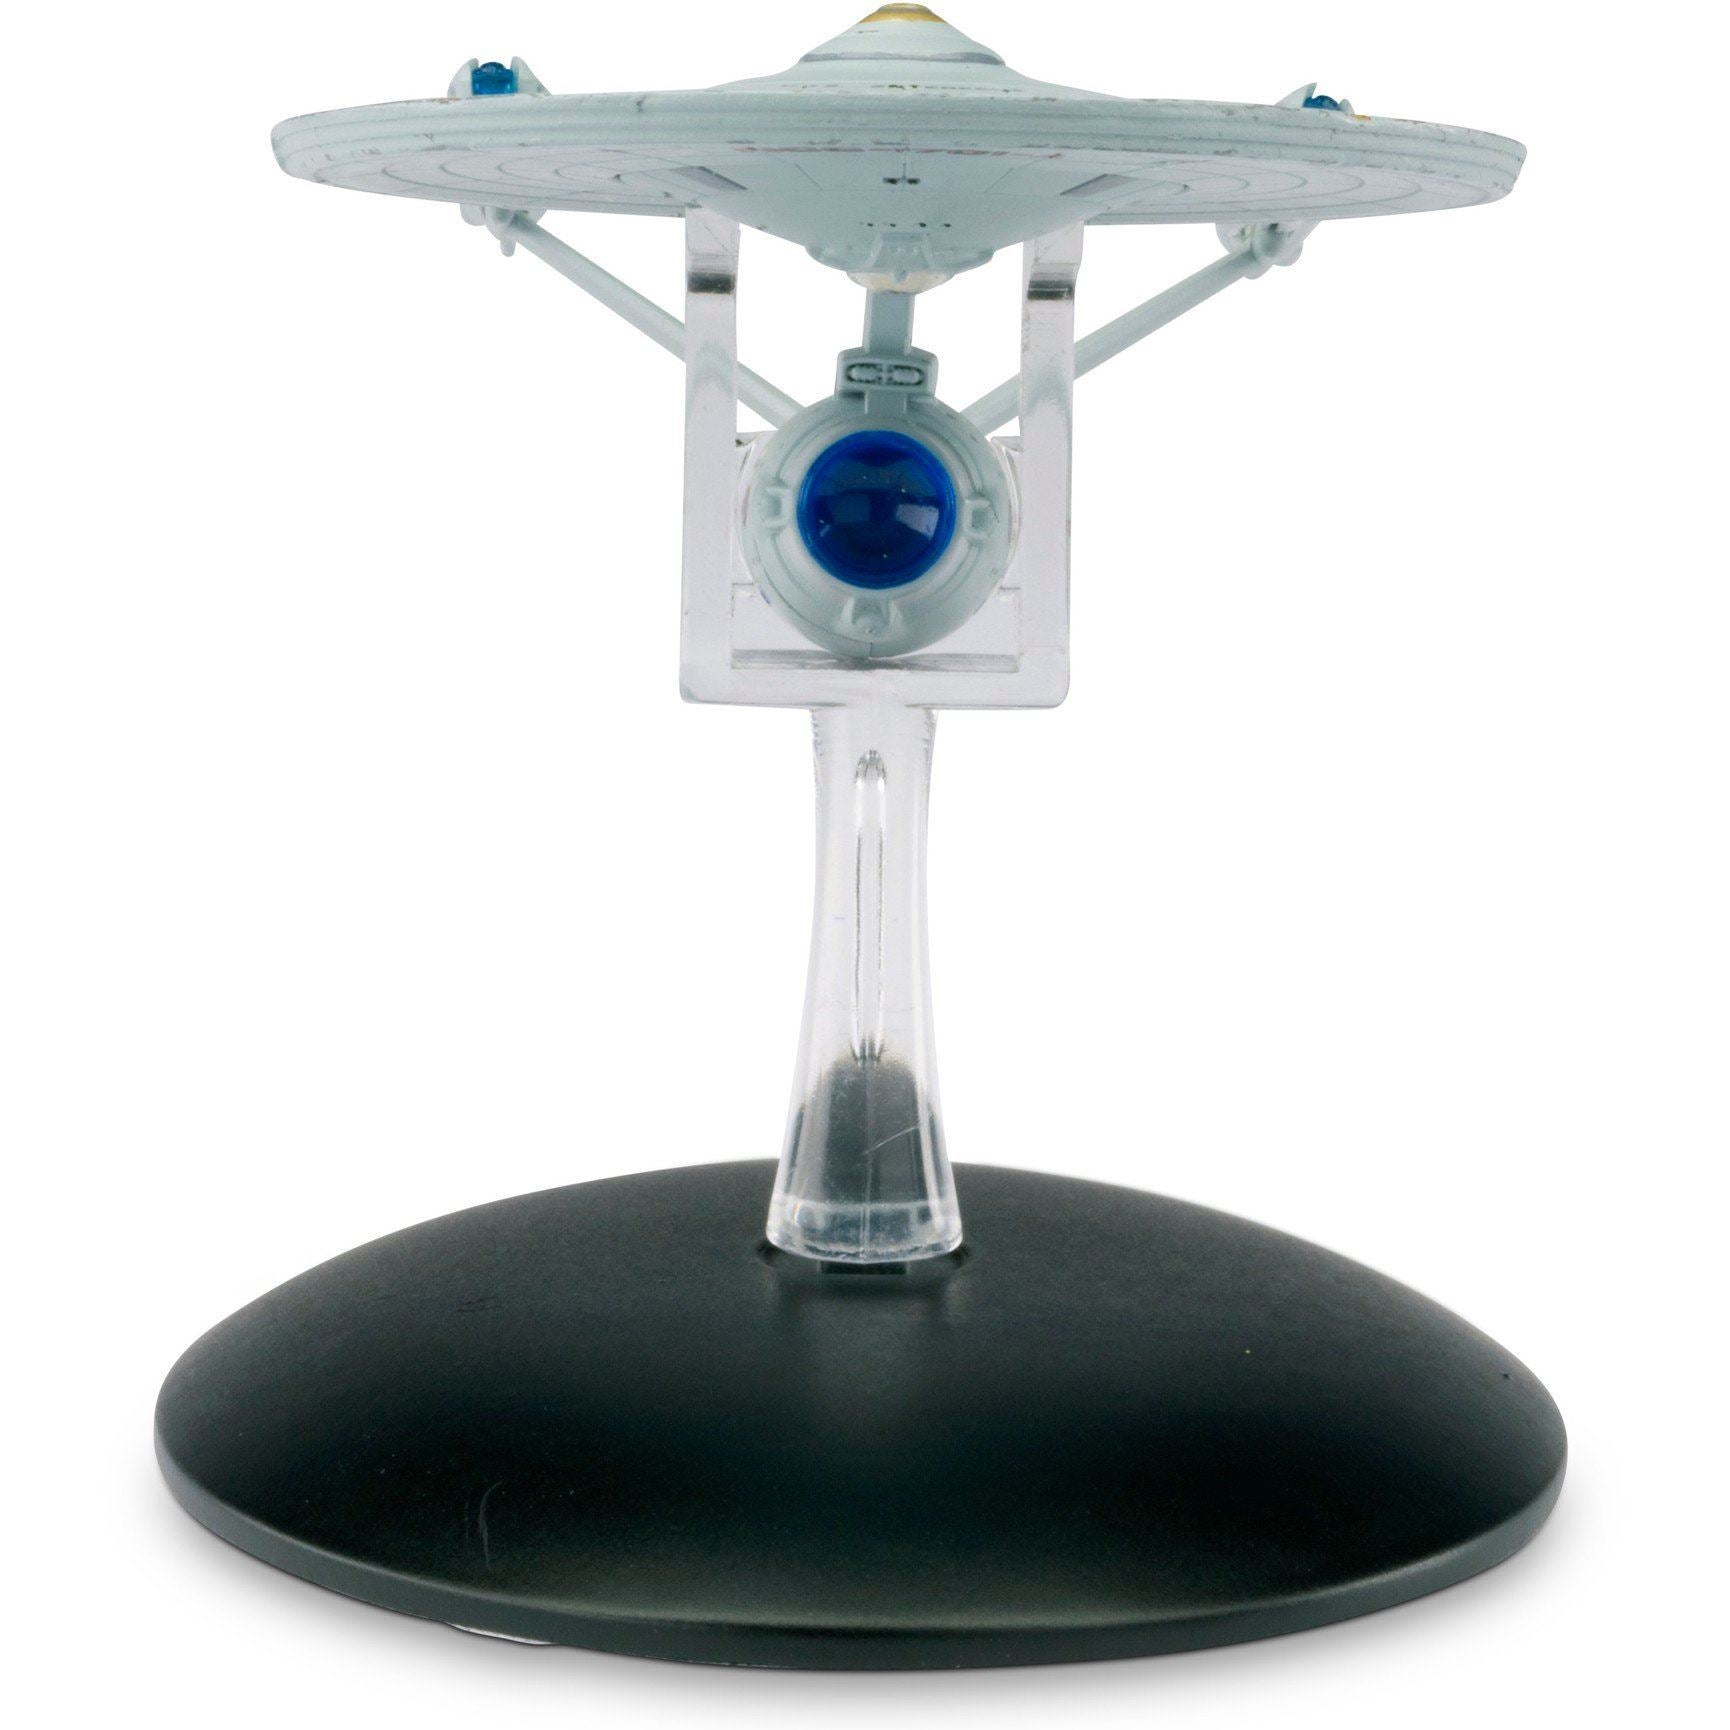 Eaglemoss Star Trek #02 Enterprise NCC-1701 TMP Model Die Cast Ship